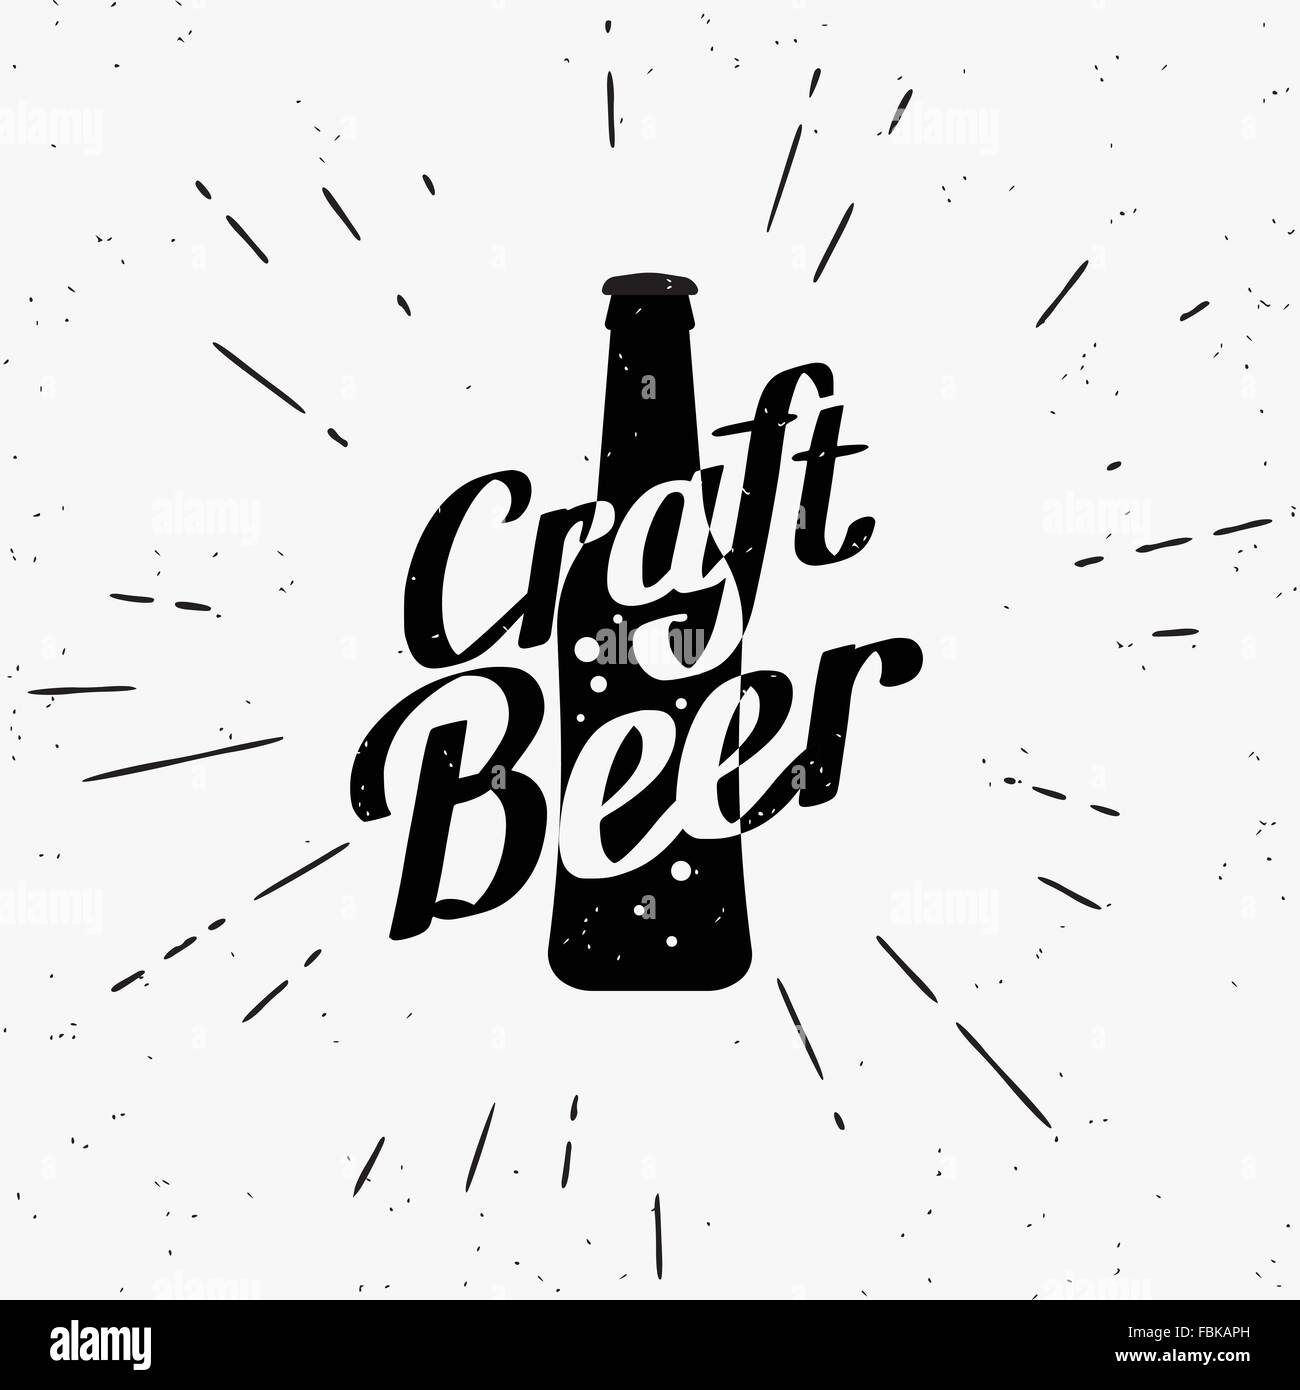 Craft beer black label Stock Vector